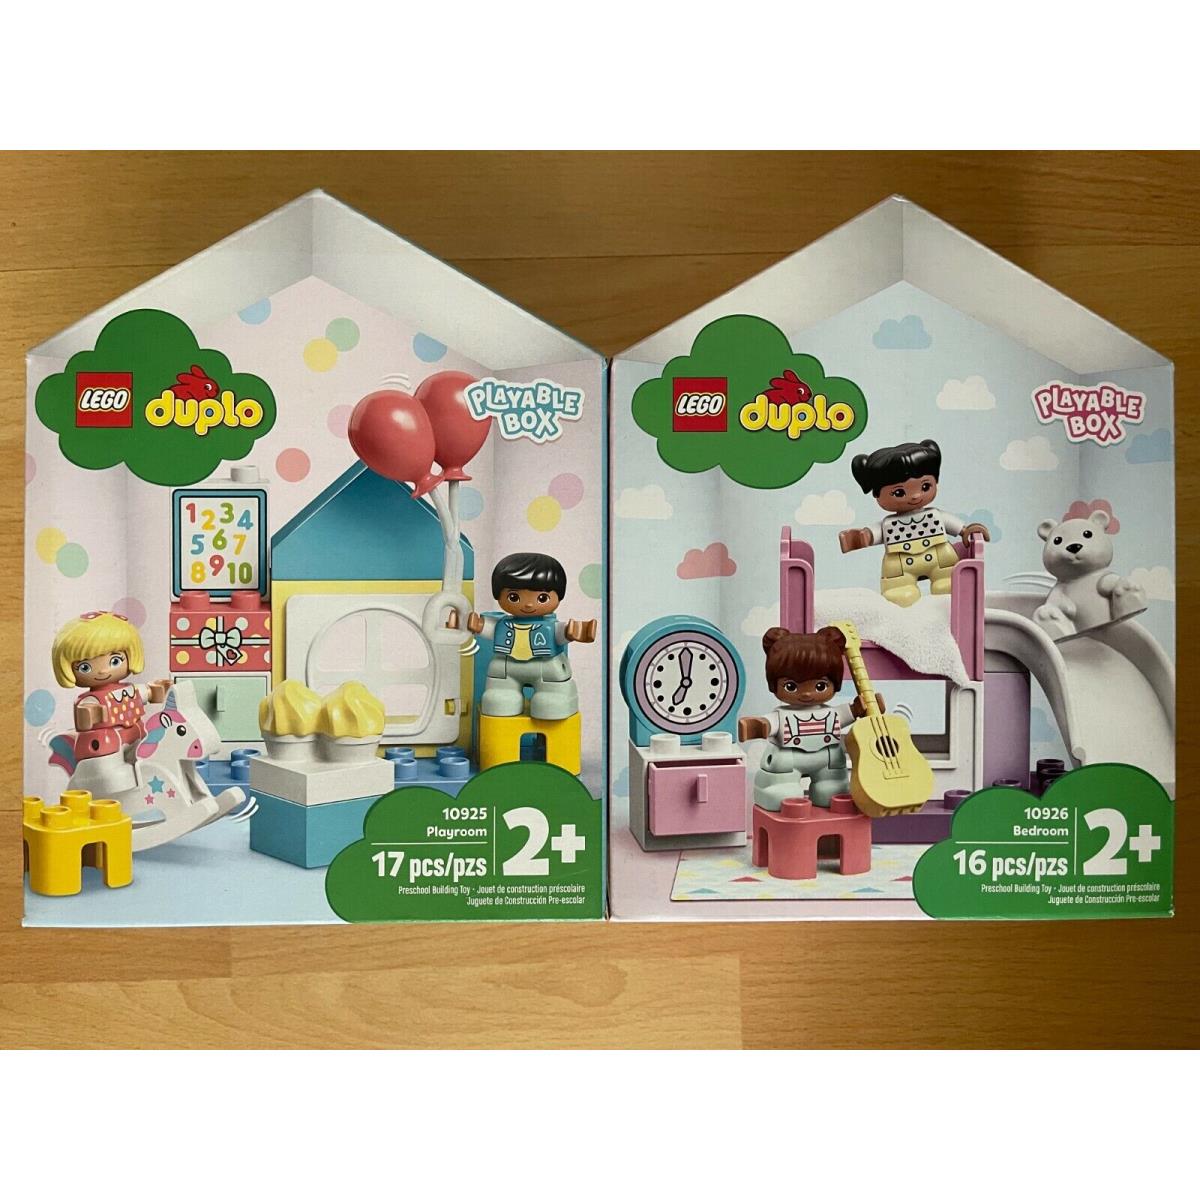 Lego Duplo 2 Sets 10925 Playroom 10926 Bedroom Nisb Age 2+ Bear Horse Balloon